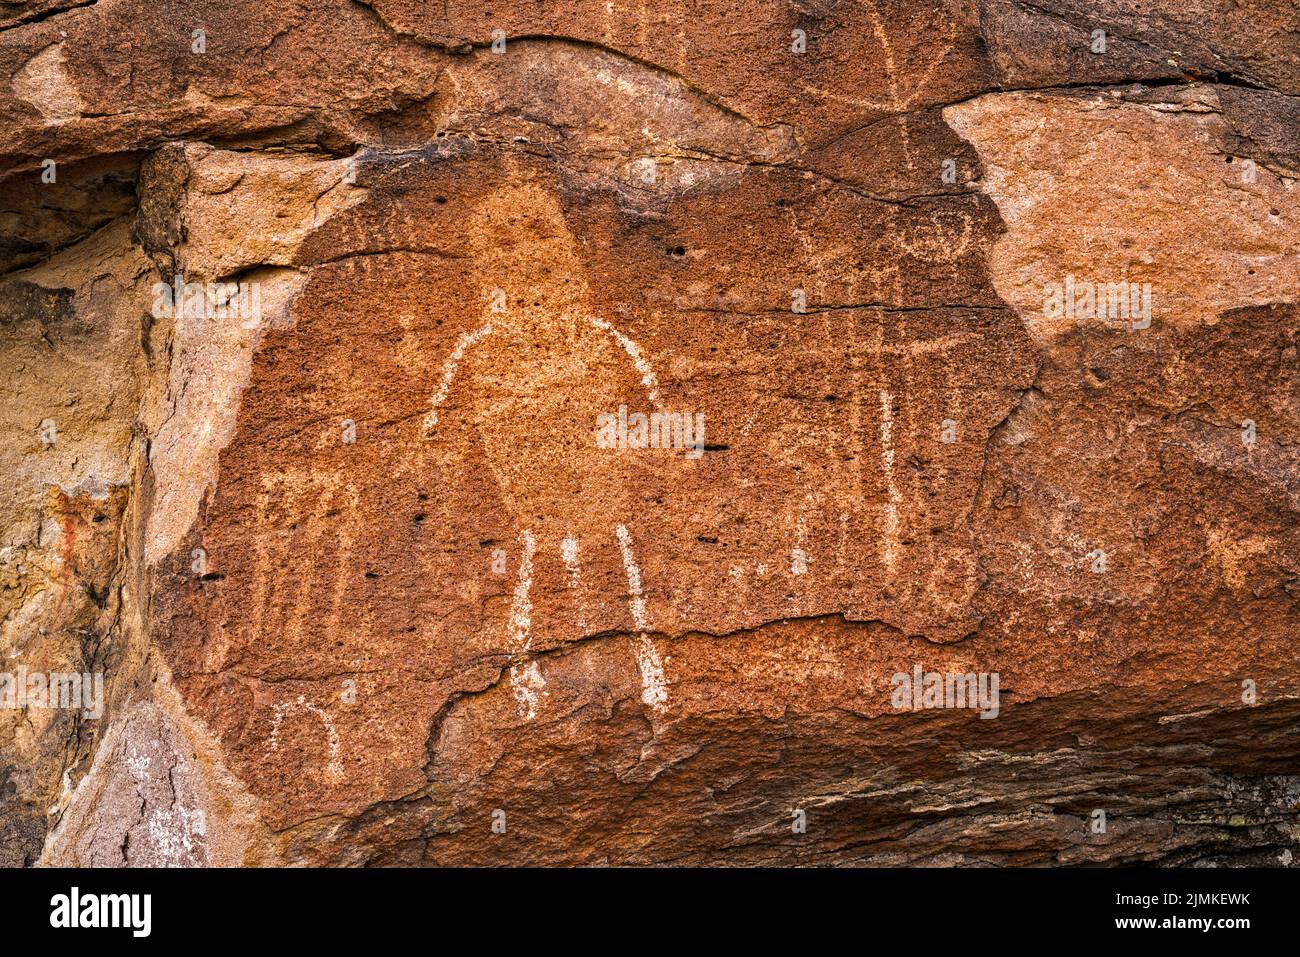 Petroglifos en el afloramiento de tuff, Distrito Arqueológico Mt Irish, Locus Occidental, Monumento Nacional Basin and Range, Nevada, EE.UU Foto de stock